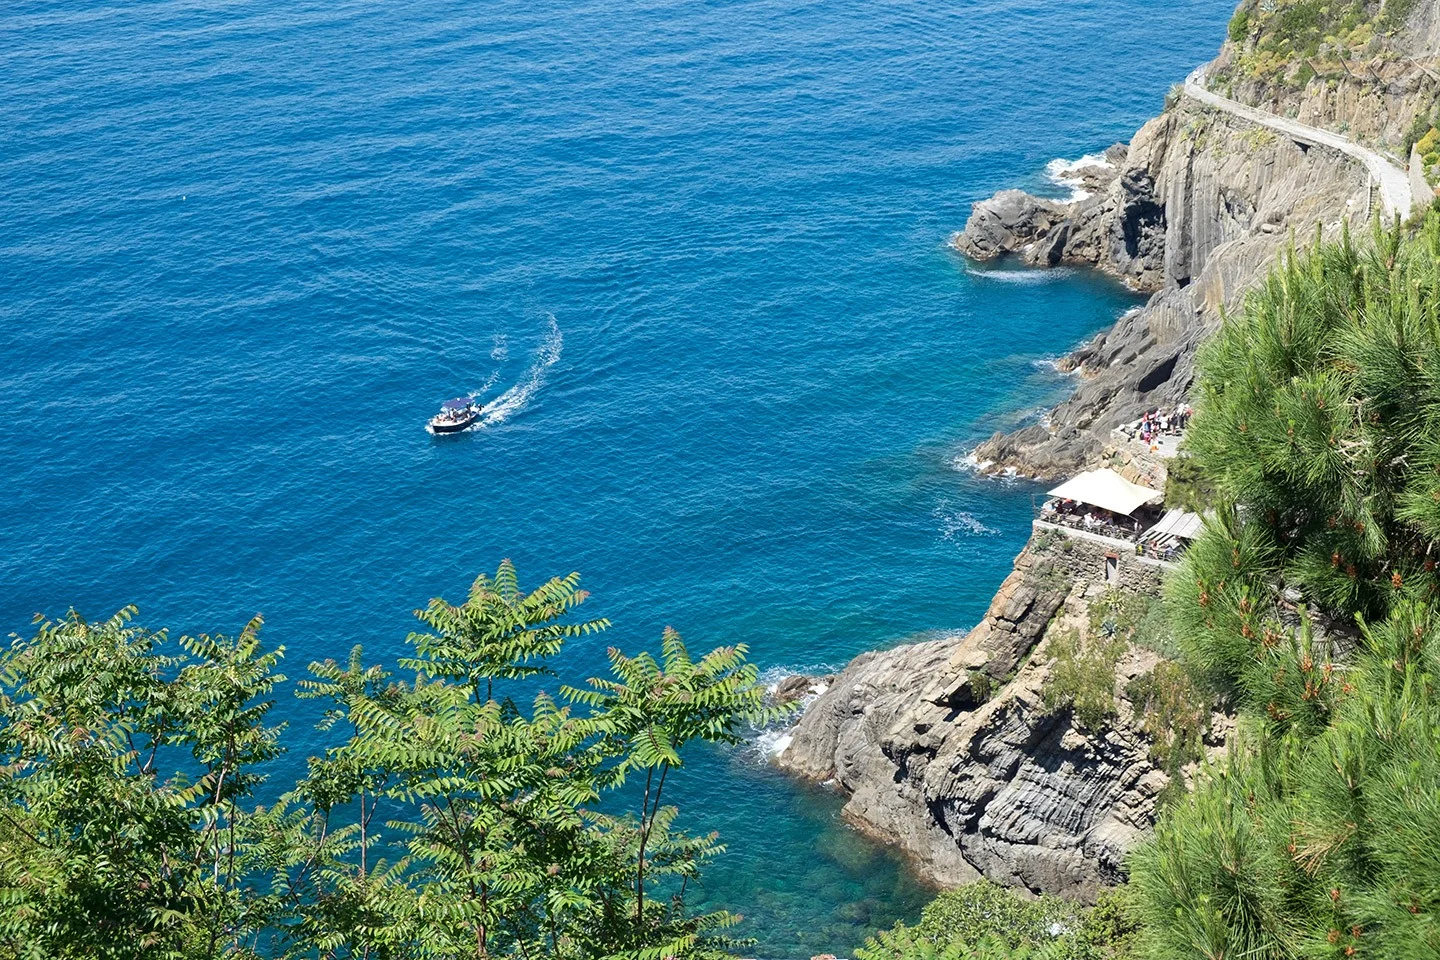 Blue seas and cliffs in Cinque Terre, Italy